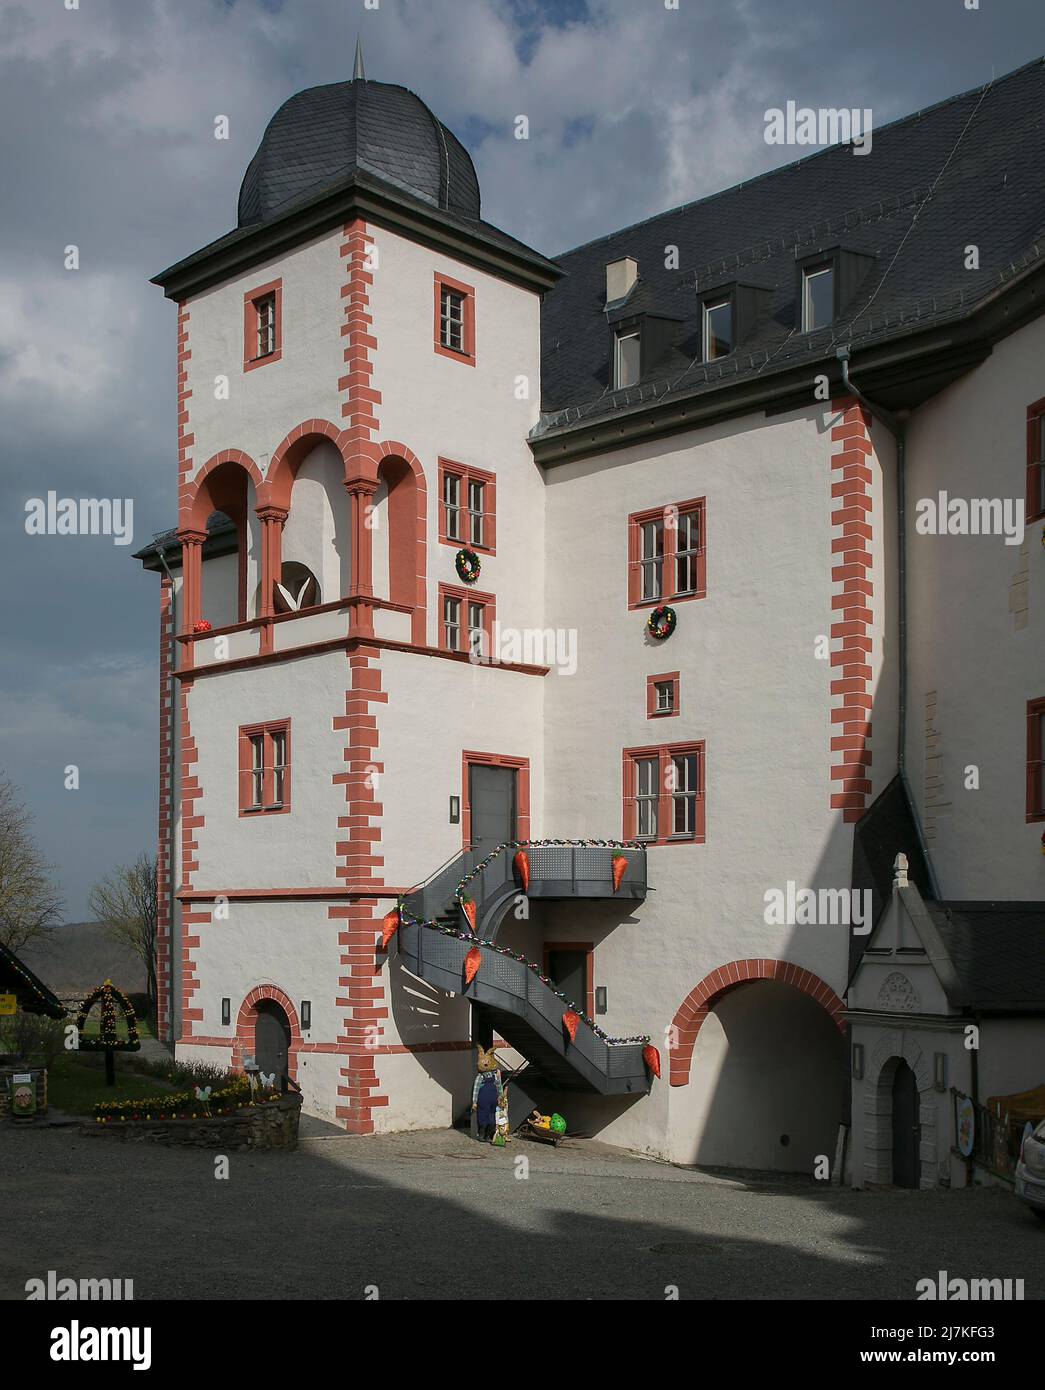 Weida Thüringen Schloß Osterburg Bildnr 1255 Neues Schloß ab 1536 aus einem Vorgängerbau entstanden -  Treppenturm Loggia m spätrom Pfeilern aus Milde Stock Photo